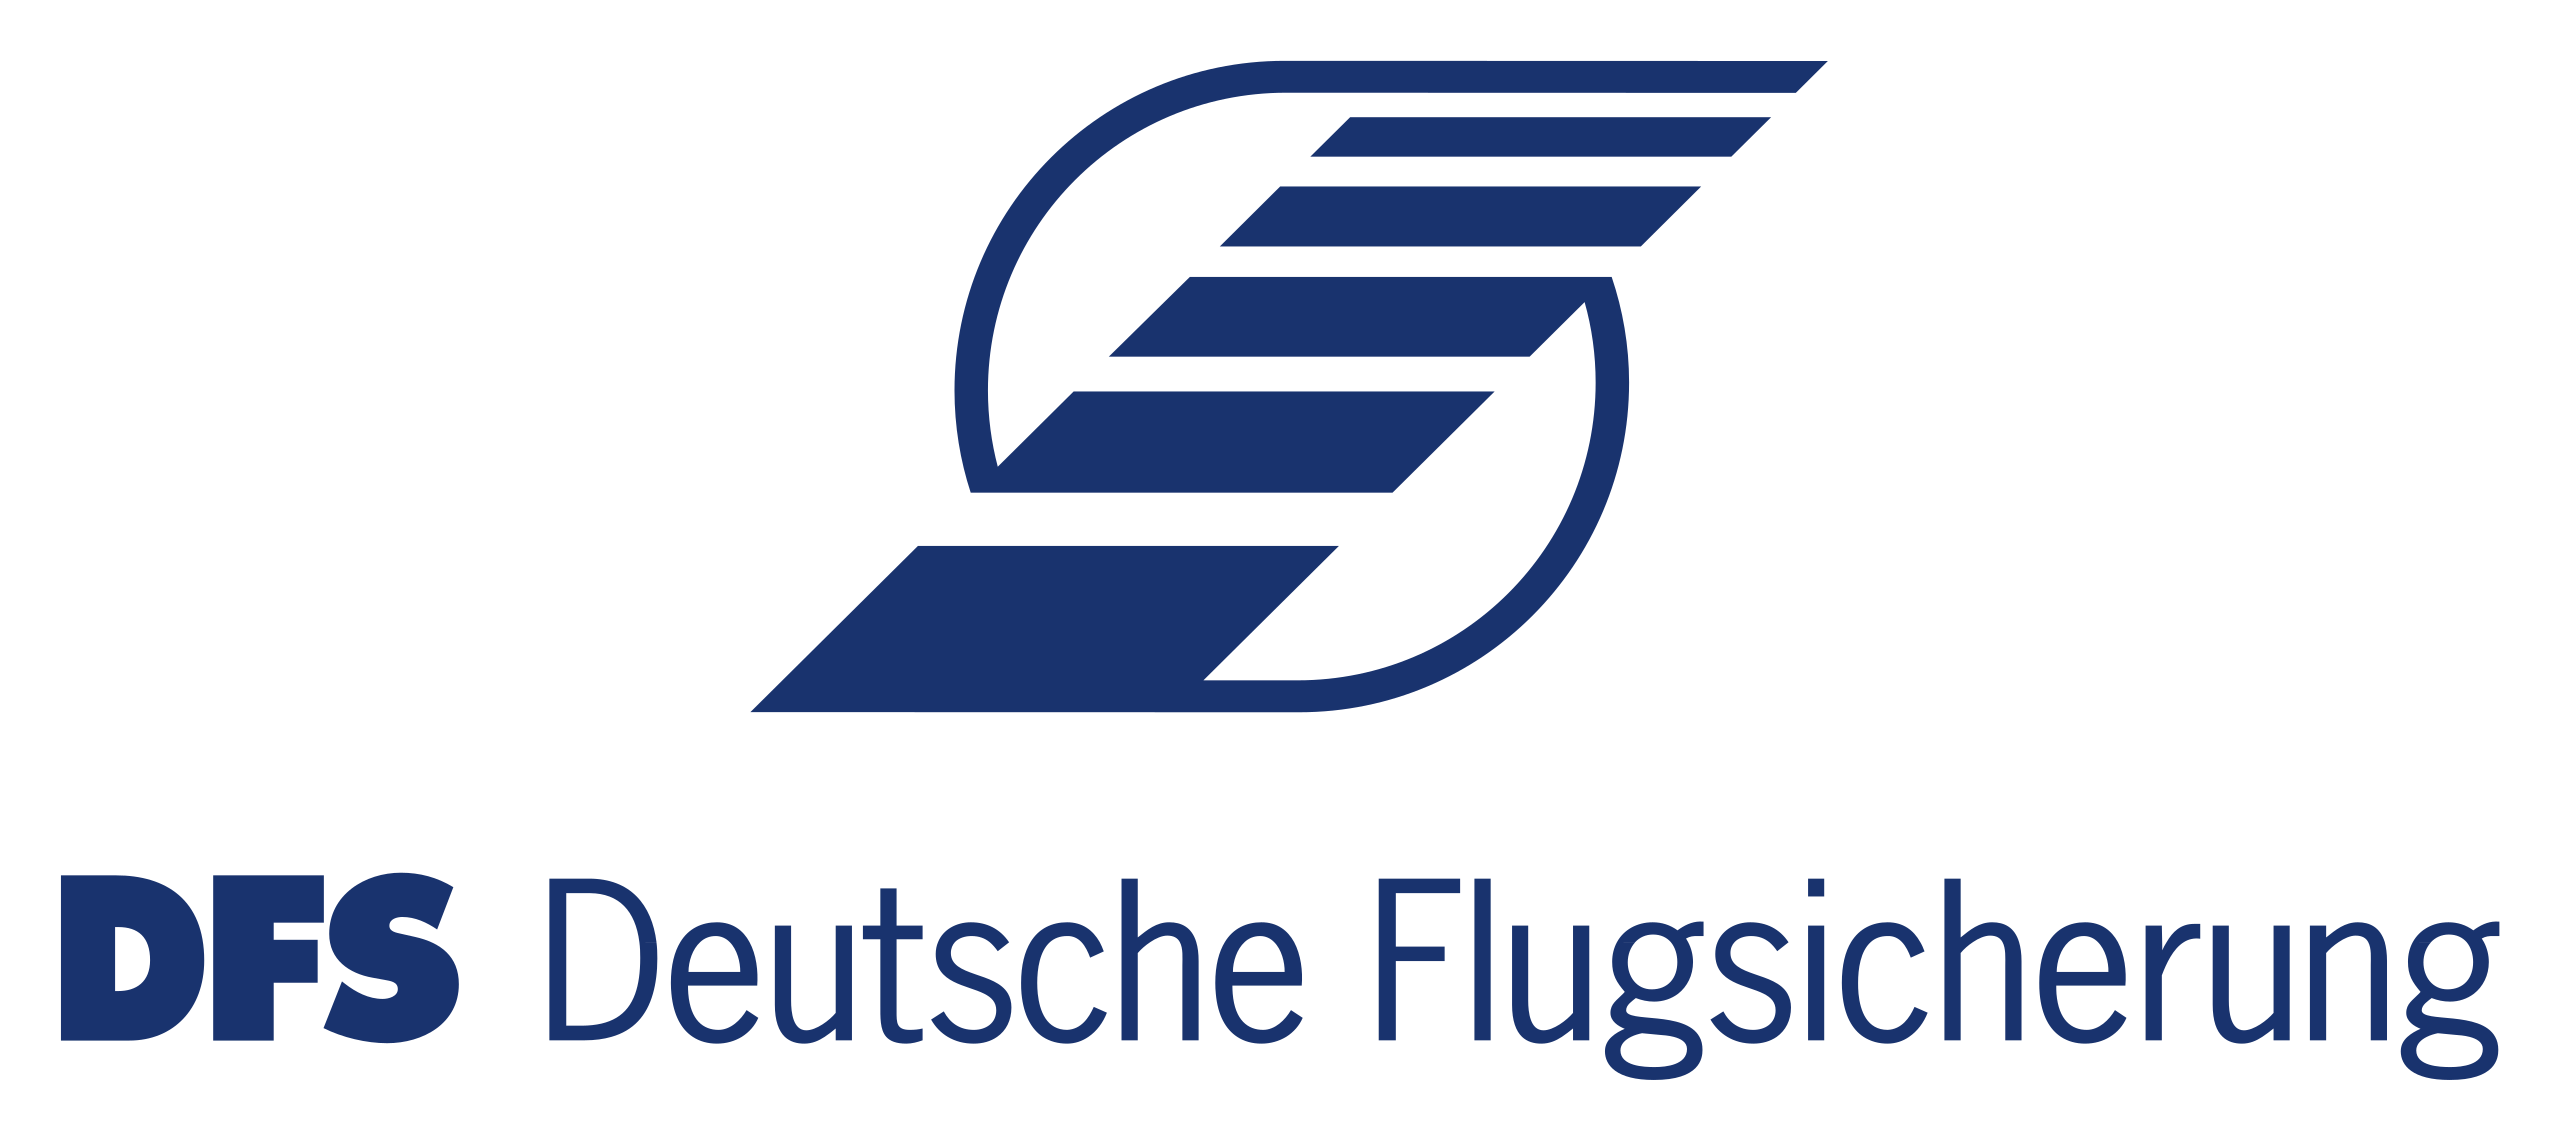 2560px-DFS_Deutsche_Flugsicherung_GmbH_Logo_2018.svg